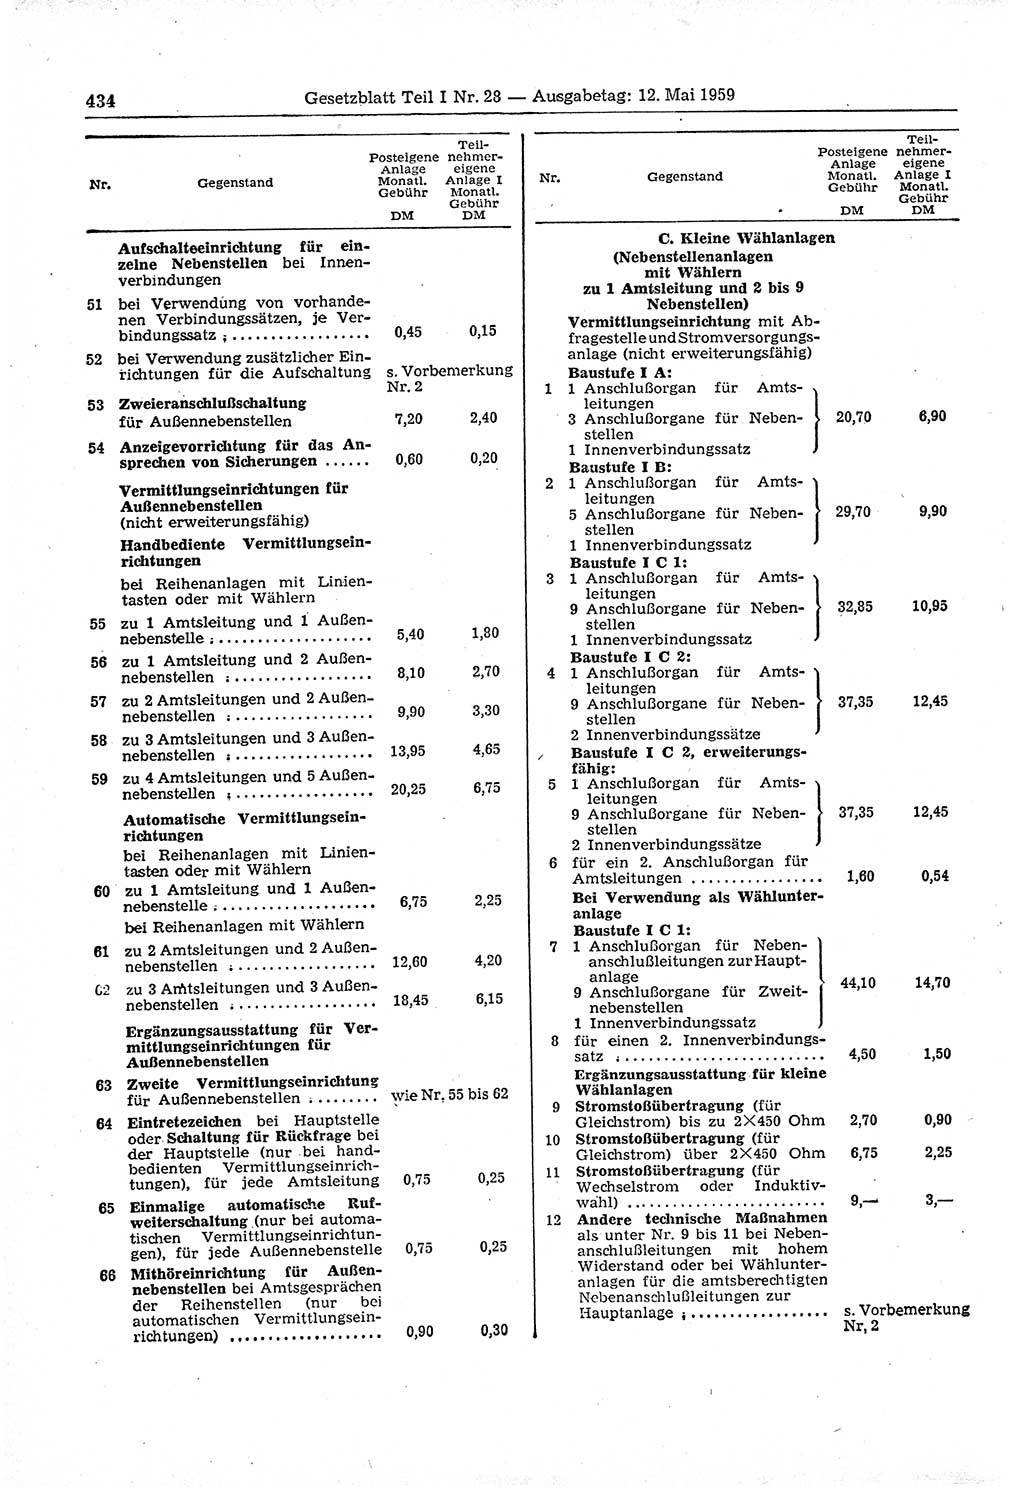 Gesetzblatt (GBl.) der Deutschen Demokratischen Republik (DDR) Teil Ⅰ 1959, Seite 434 (GBl. DDR Ⅰ 1959, S. 434)